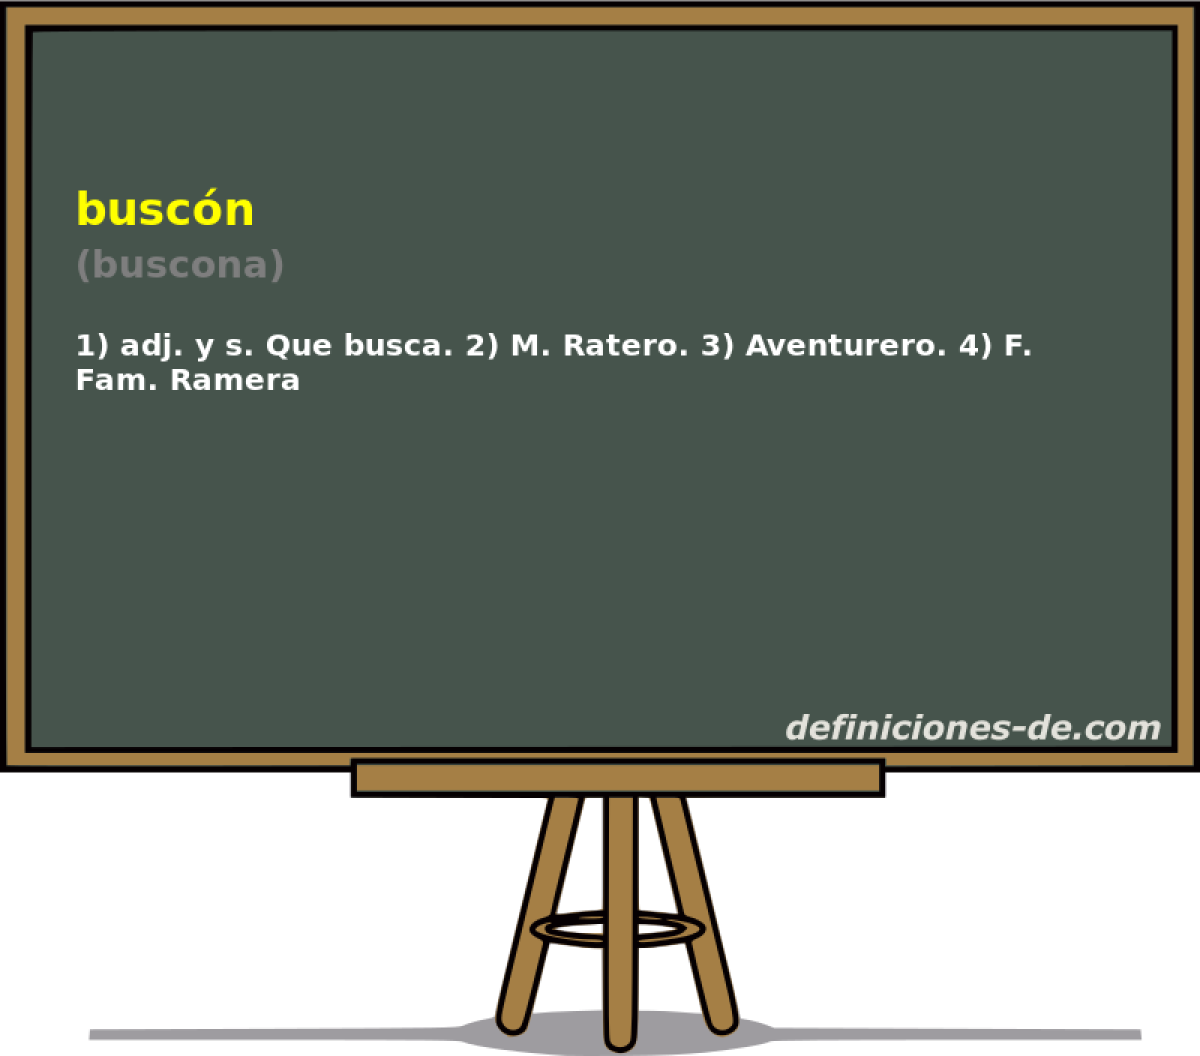 buscn (buscona)